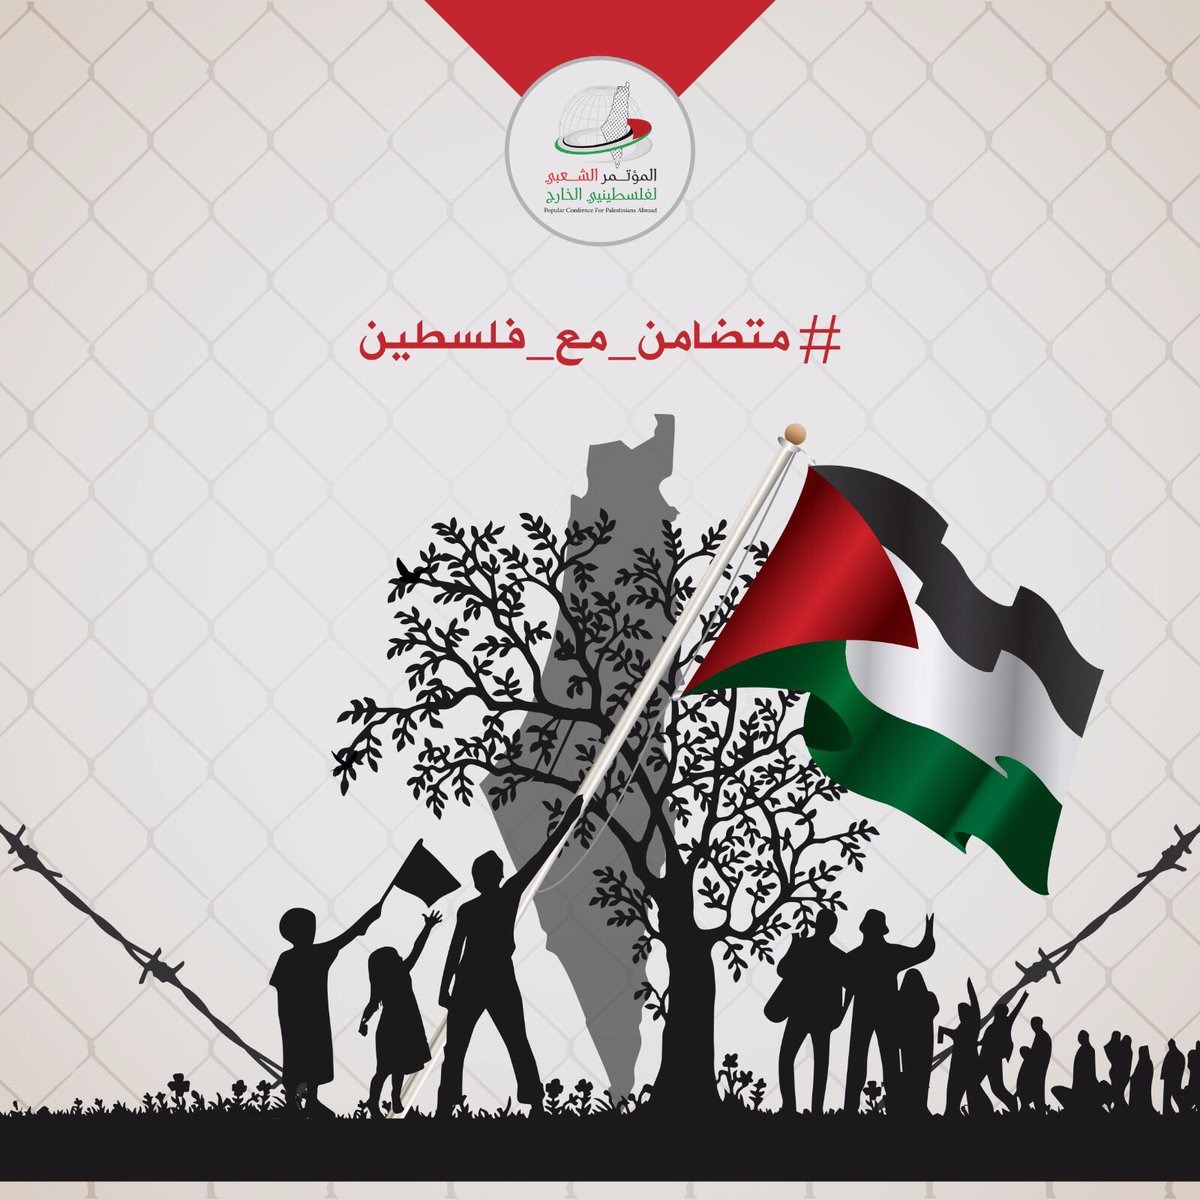 ماهو اليوم الدولي للتضامن مع الشعب الفلسطيني 29 تشرين الثاني / نوفمبر؟